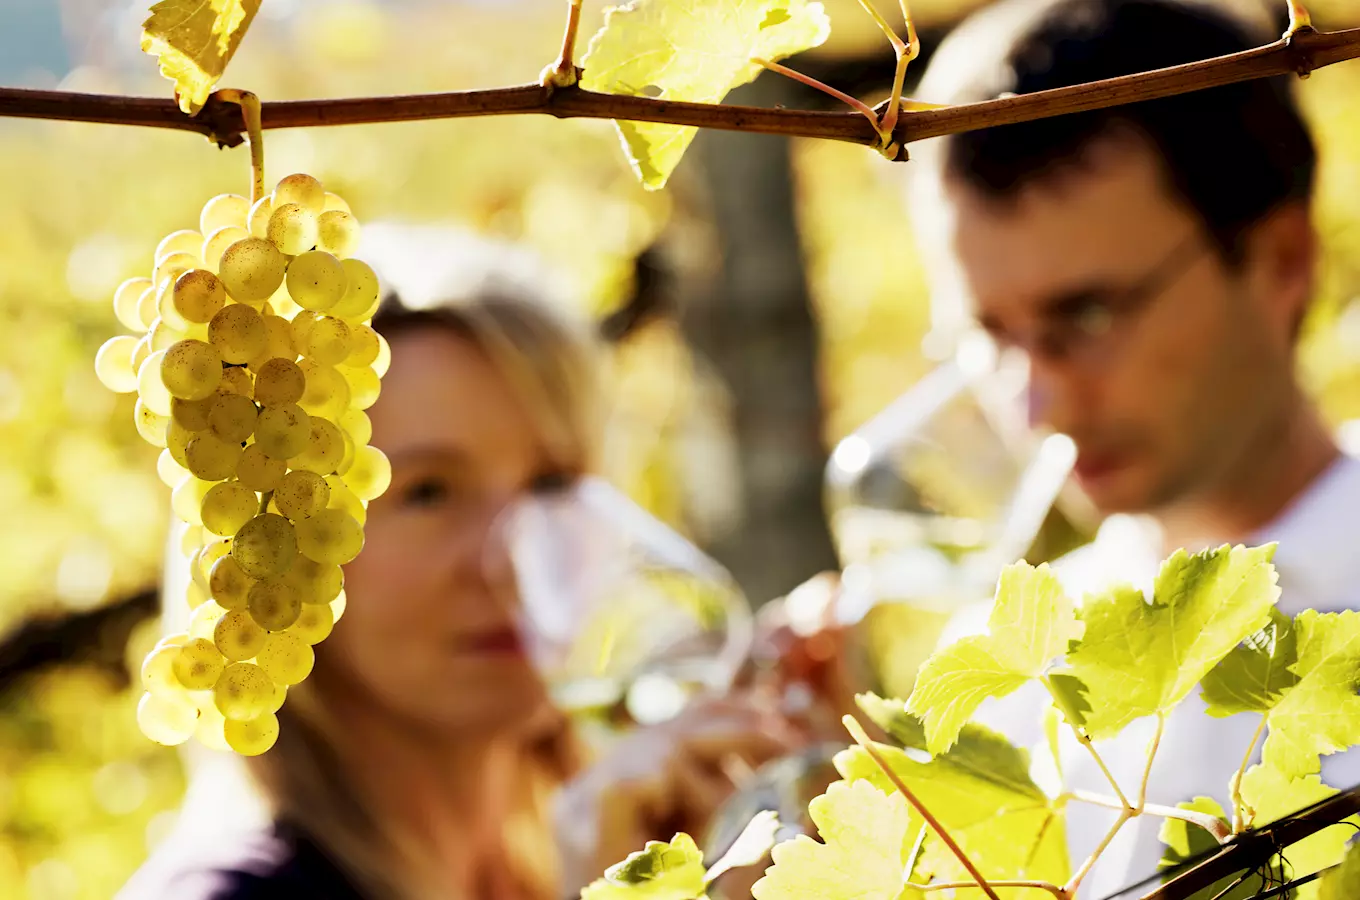 Ledové víno ovládne opět Lednici – světový den ledového vína v Lednicko-valtickém areálu